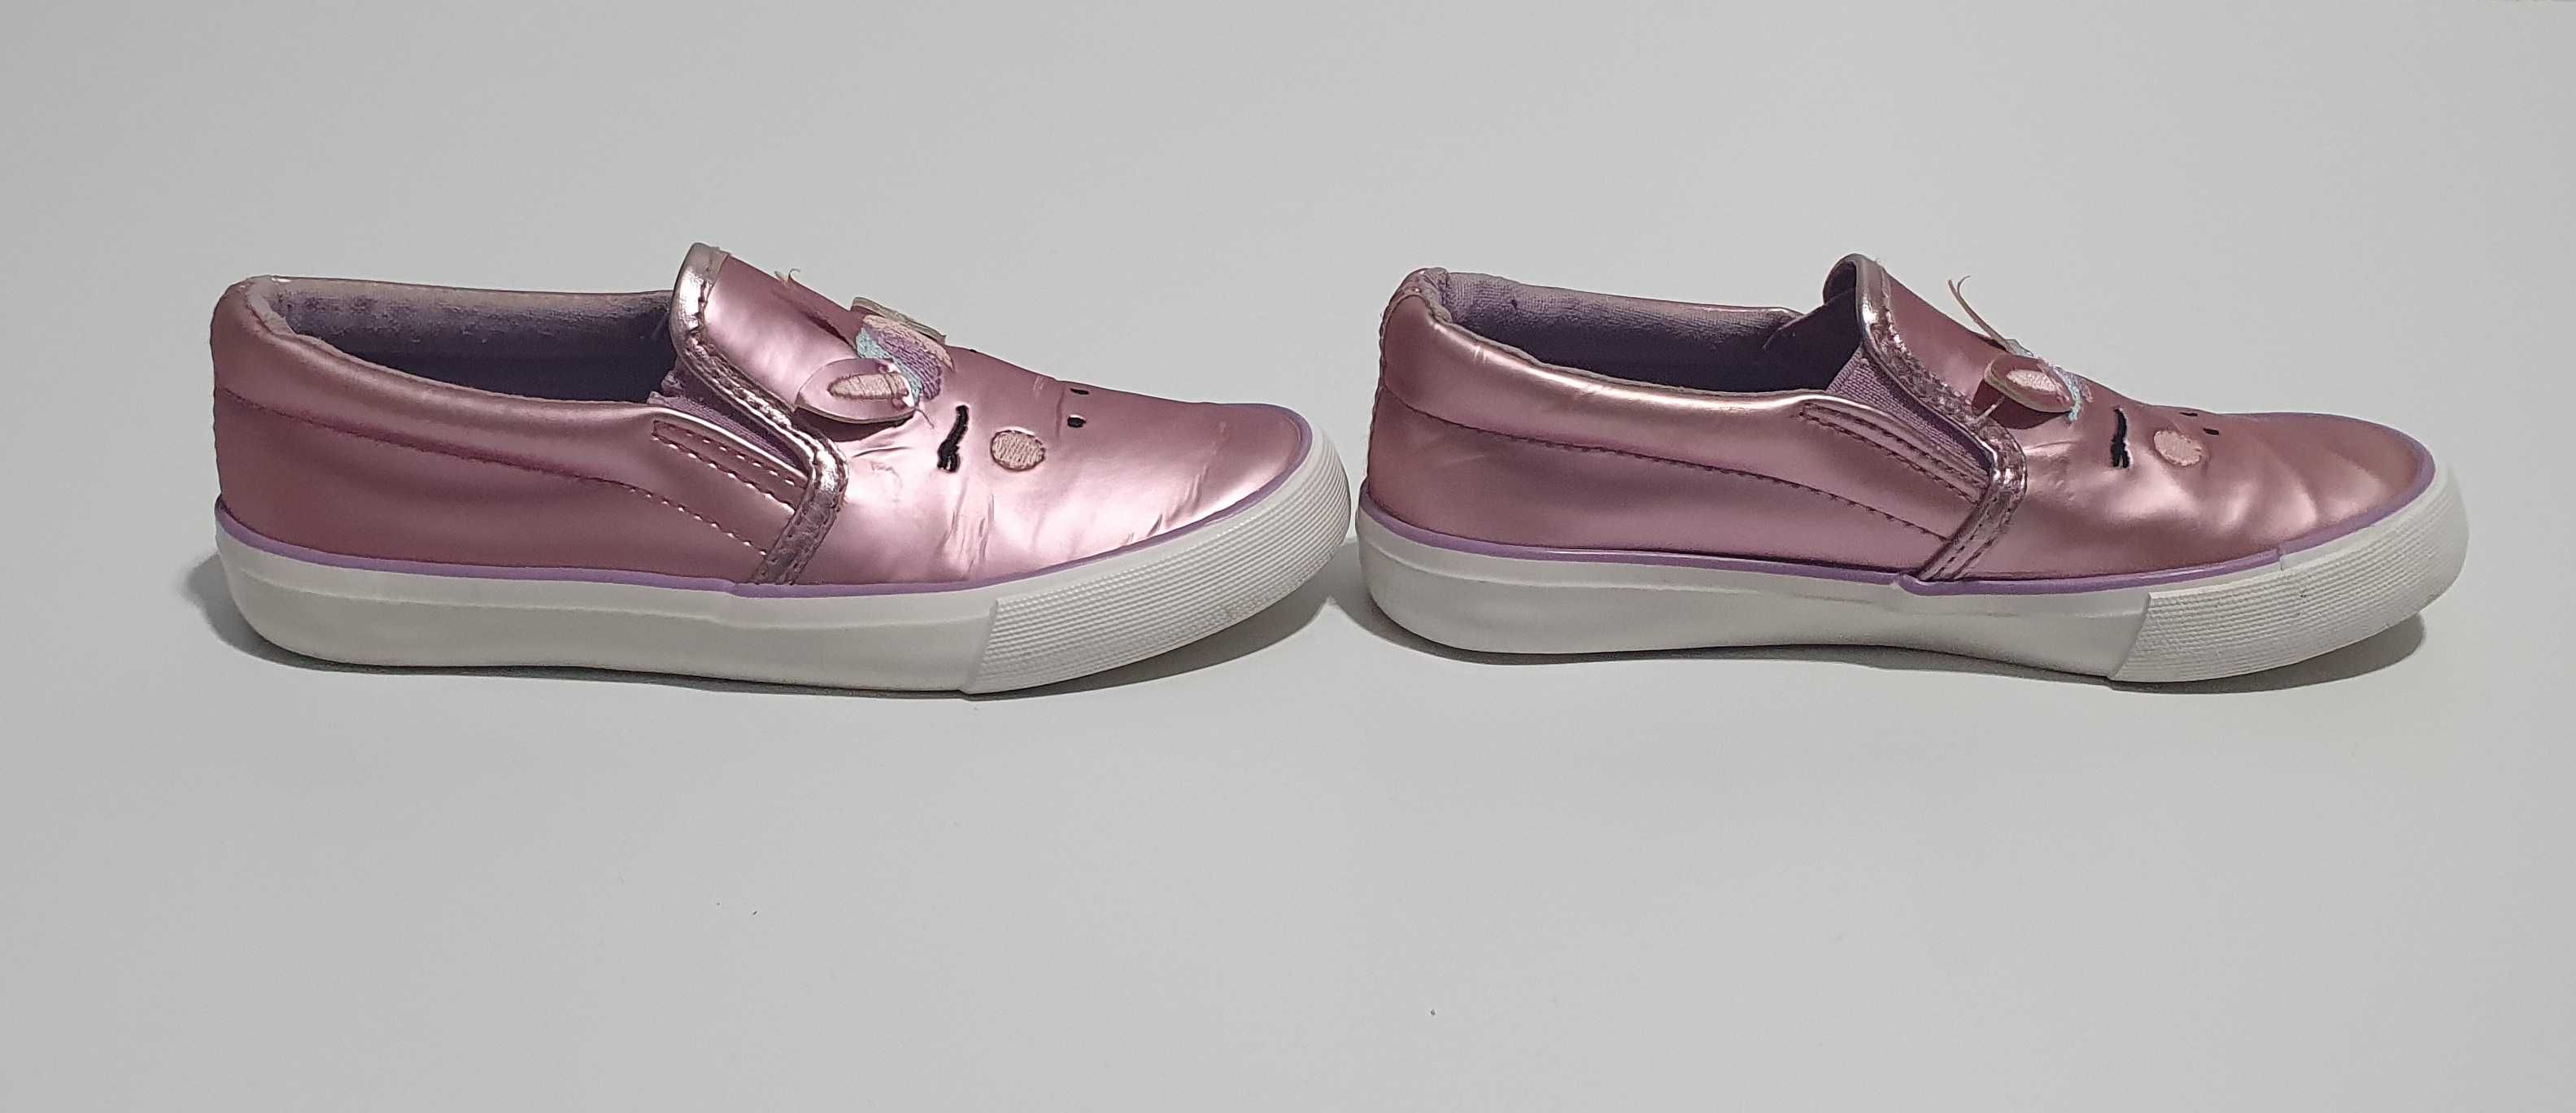 Pantofi Unicorn Roz Metalizat pentru fete marime 30 interior 19 cm